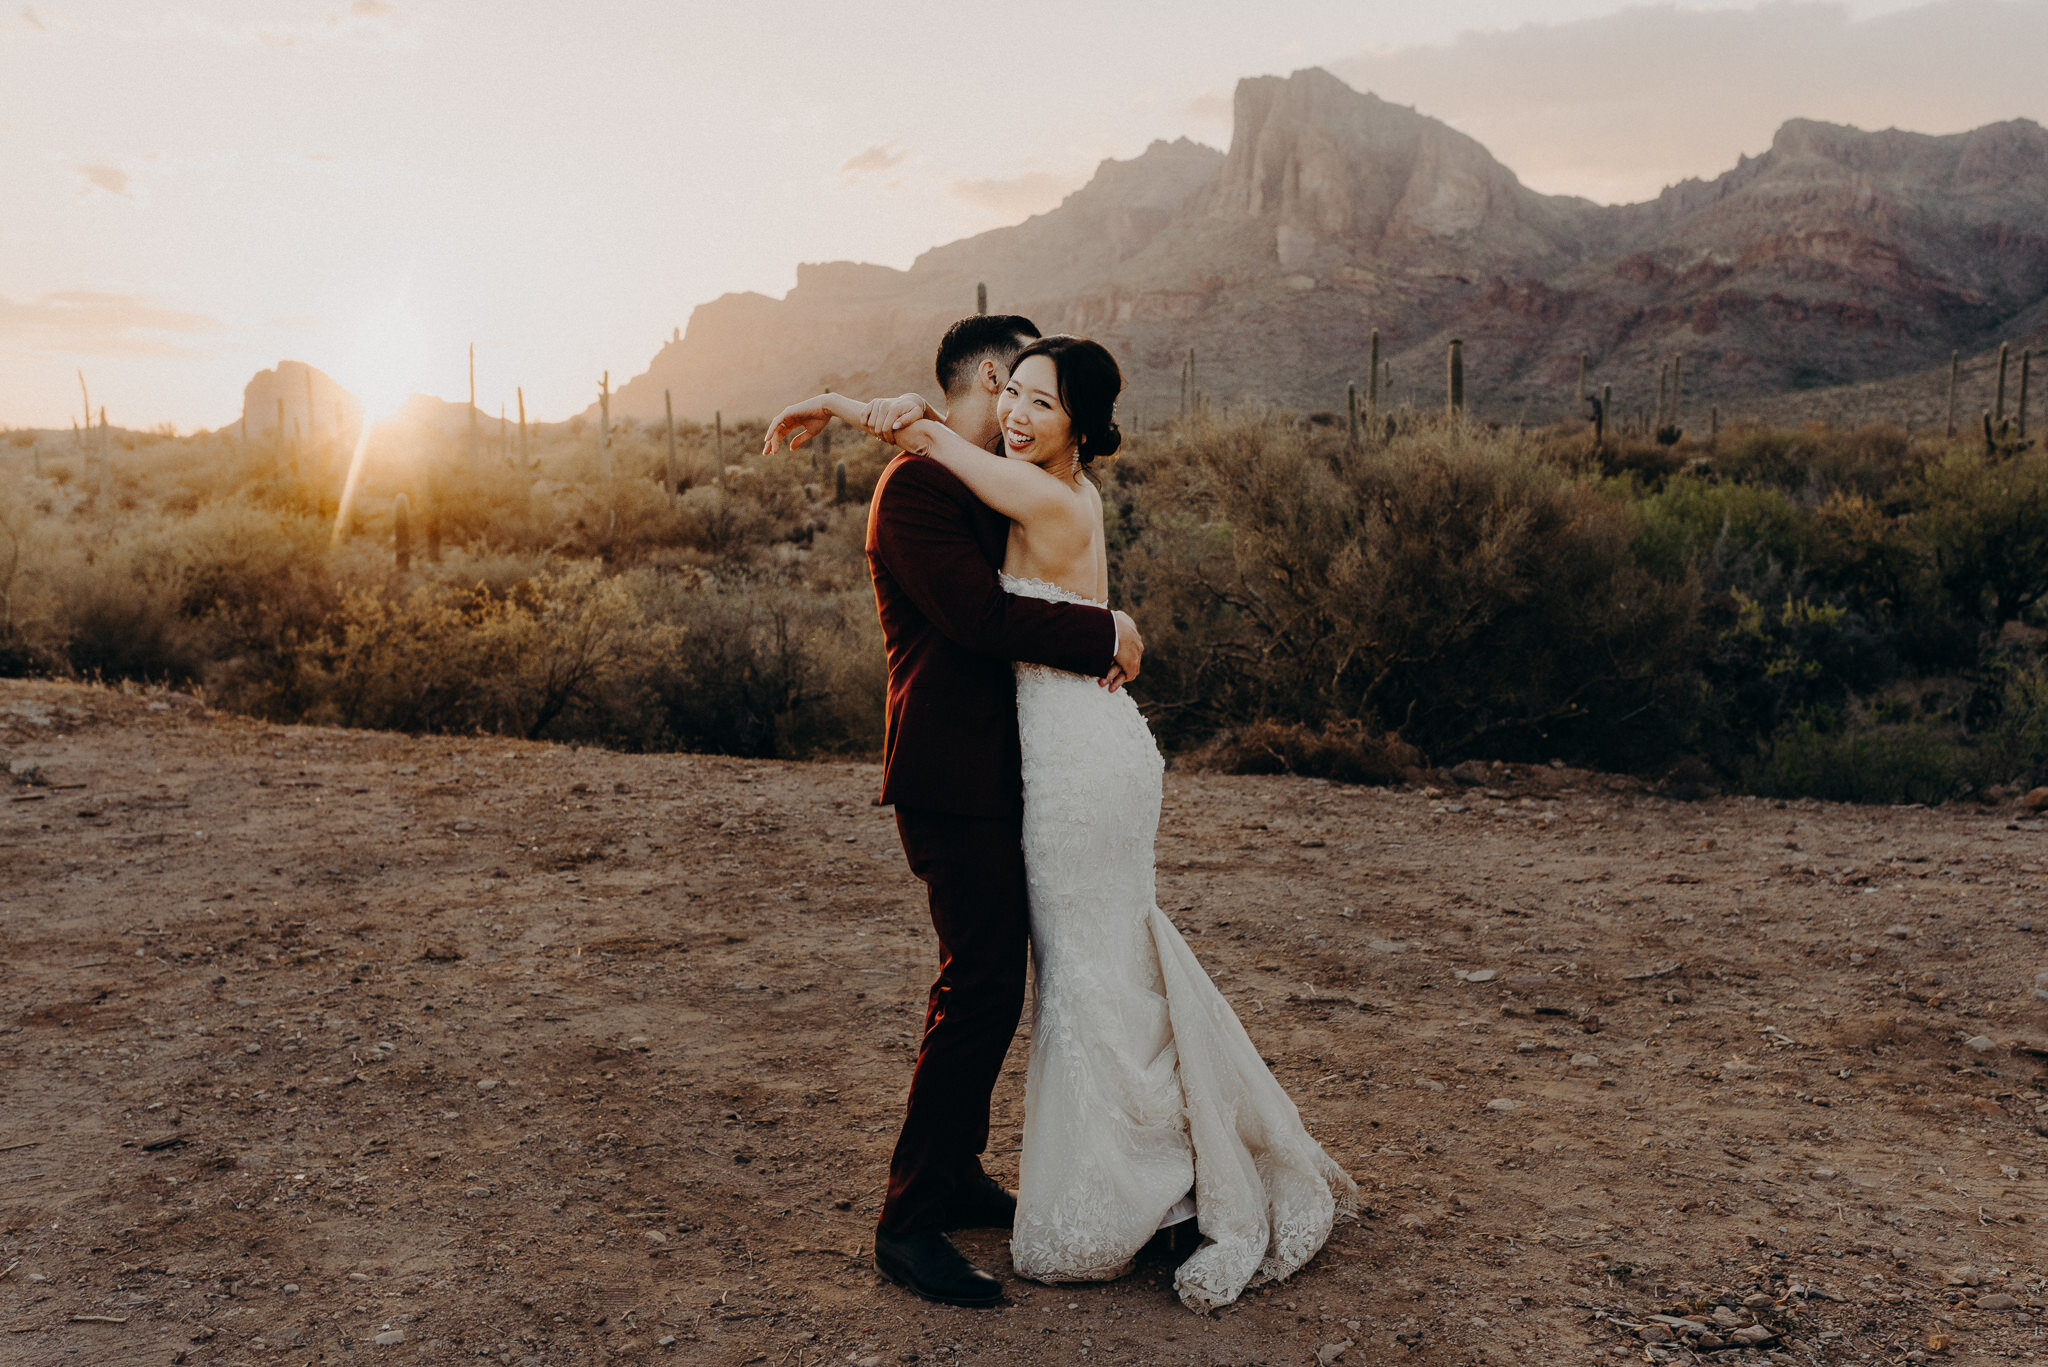 california wedding photograhers - desert elopement - supersition mountains - isaiahandtaylor.com-110.jpg